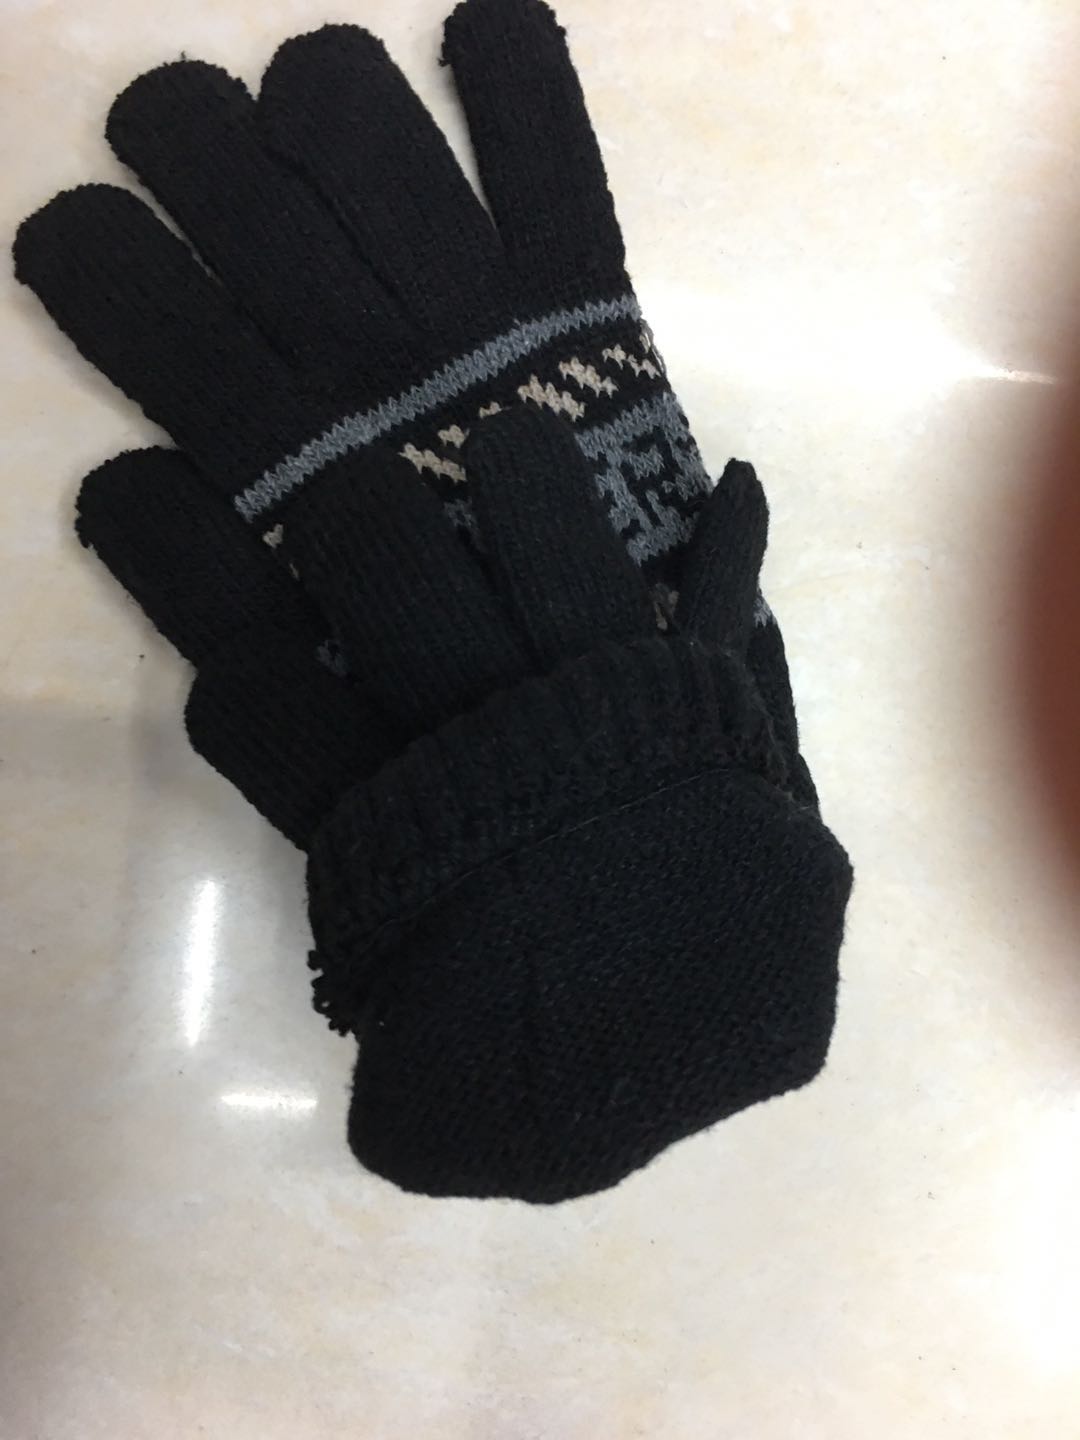 手套冬季保暖 触摸屏手套 地摊针织手套低价批发2元超市供应细节图